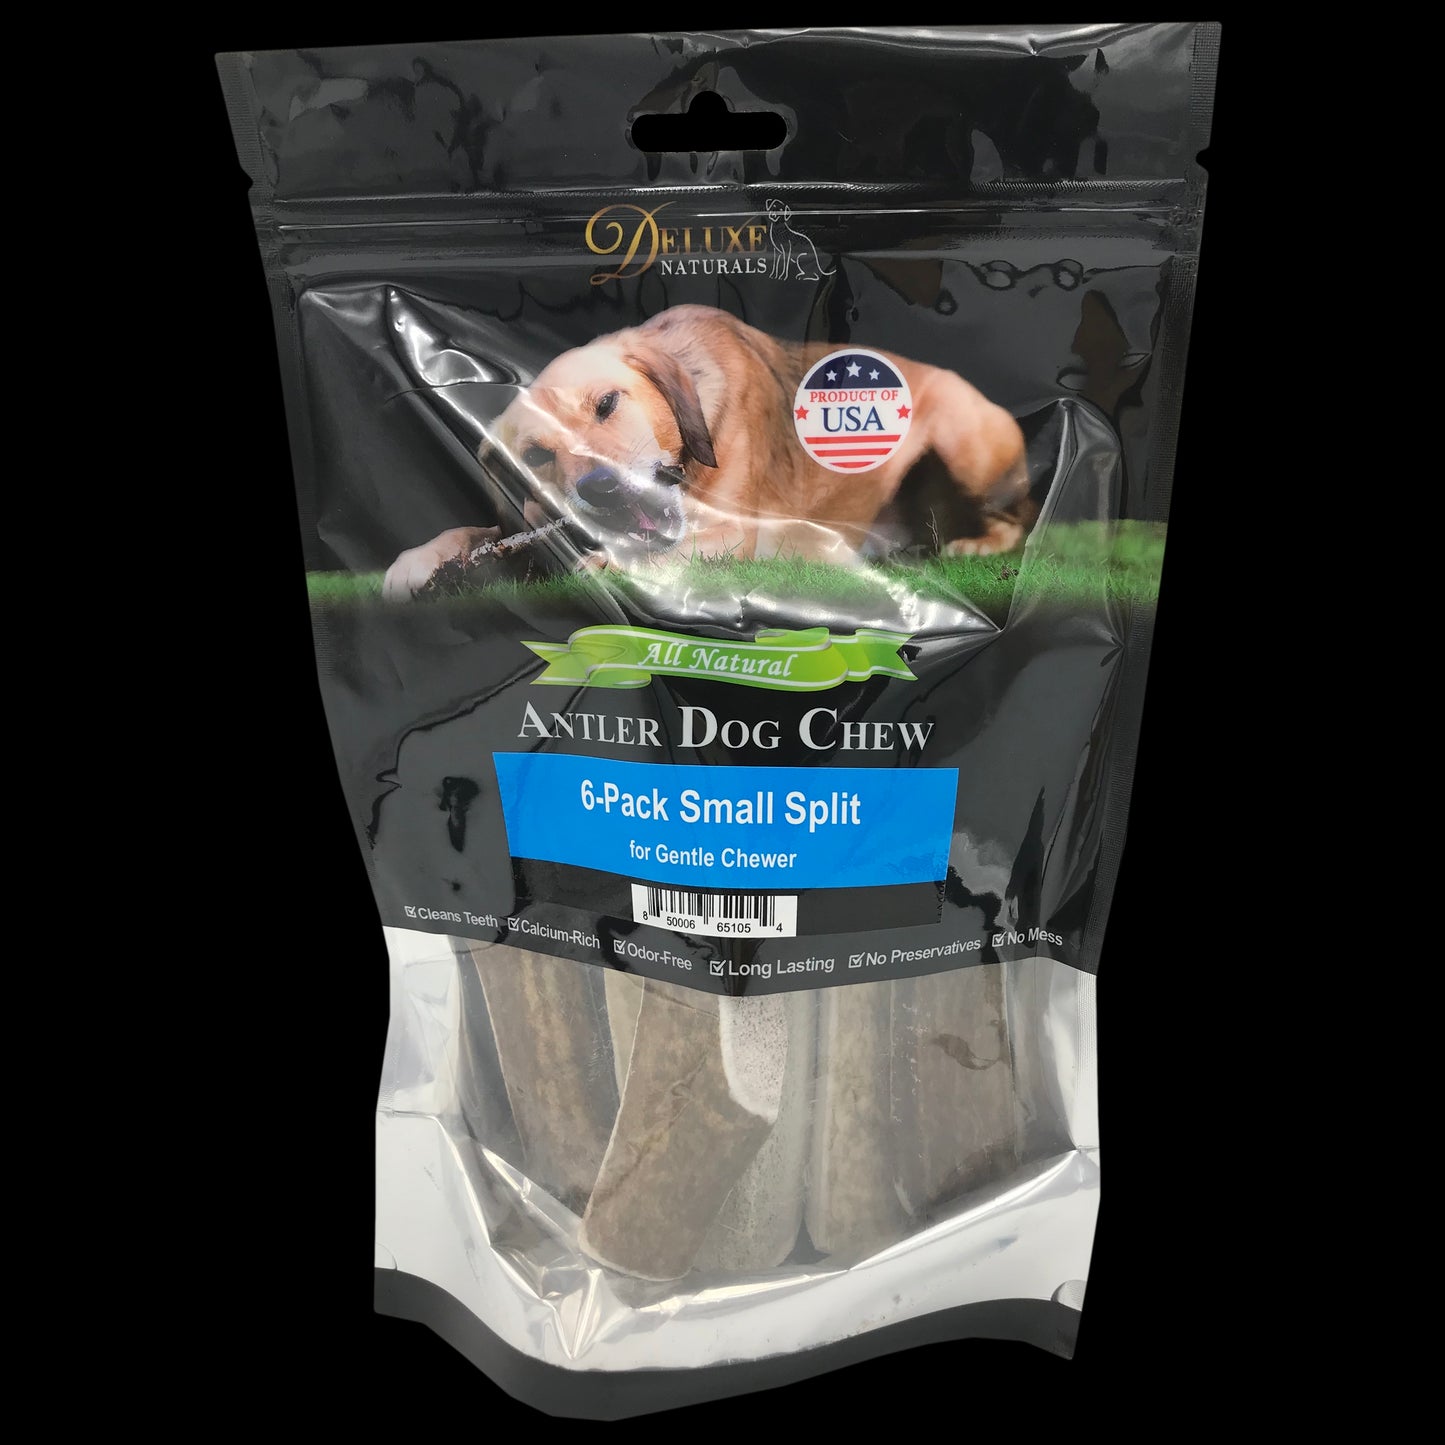 Deluxe Naturals 6-Pack Elk Antler Dog Chew - Small Split